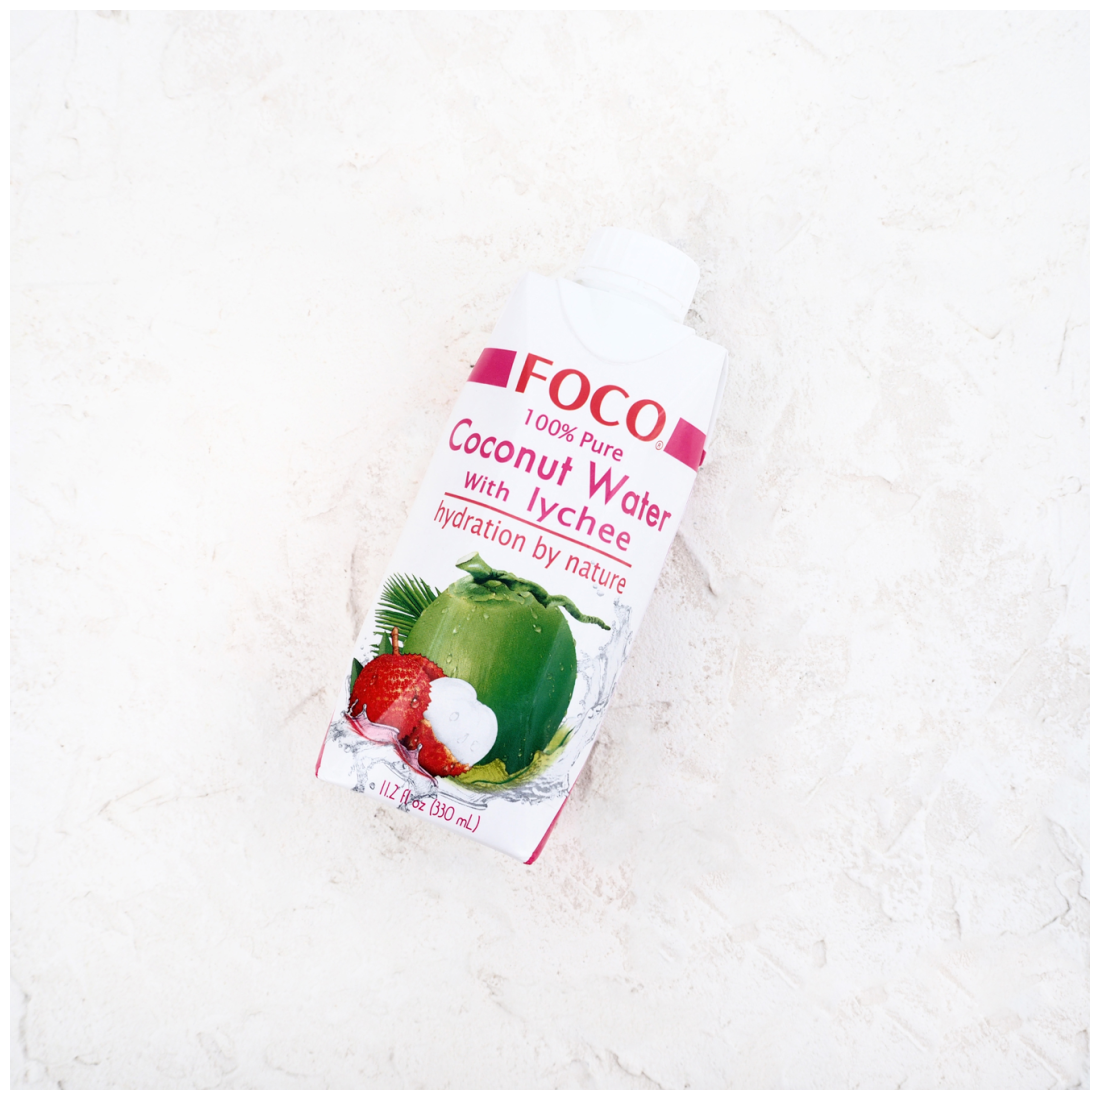 Кокосовая вода с соком личи "FOCO" 330 мл Tetra Pak - фотография № 9